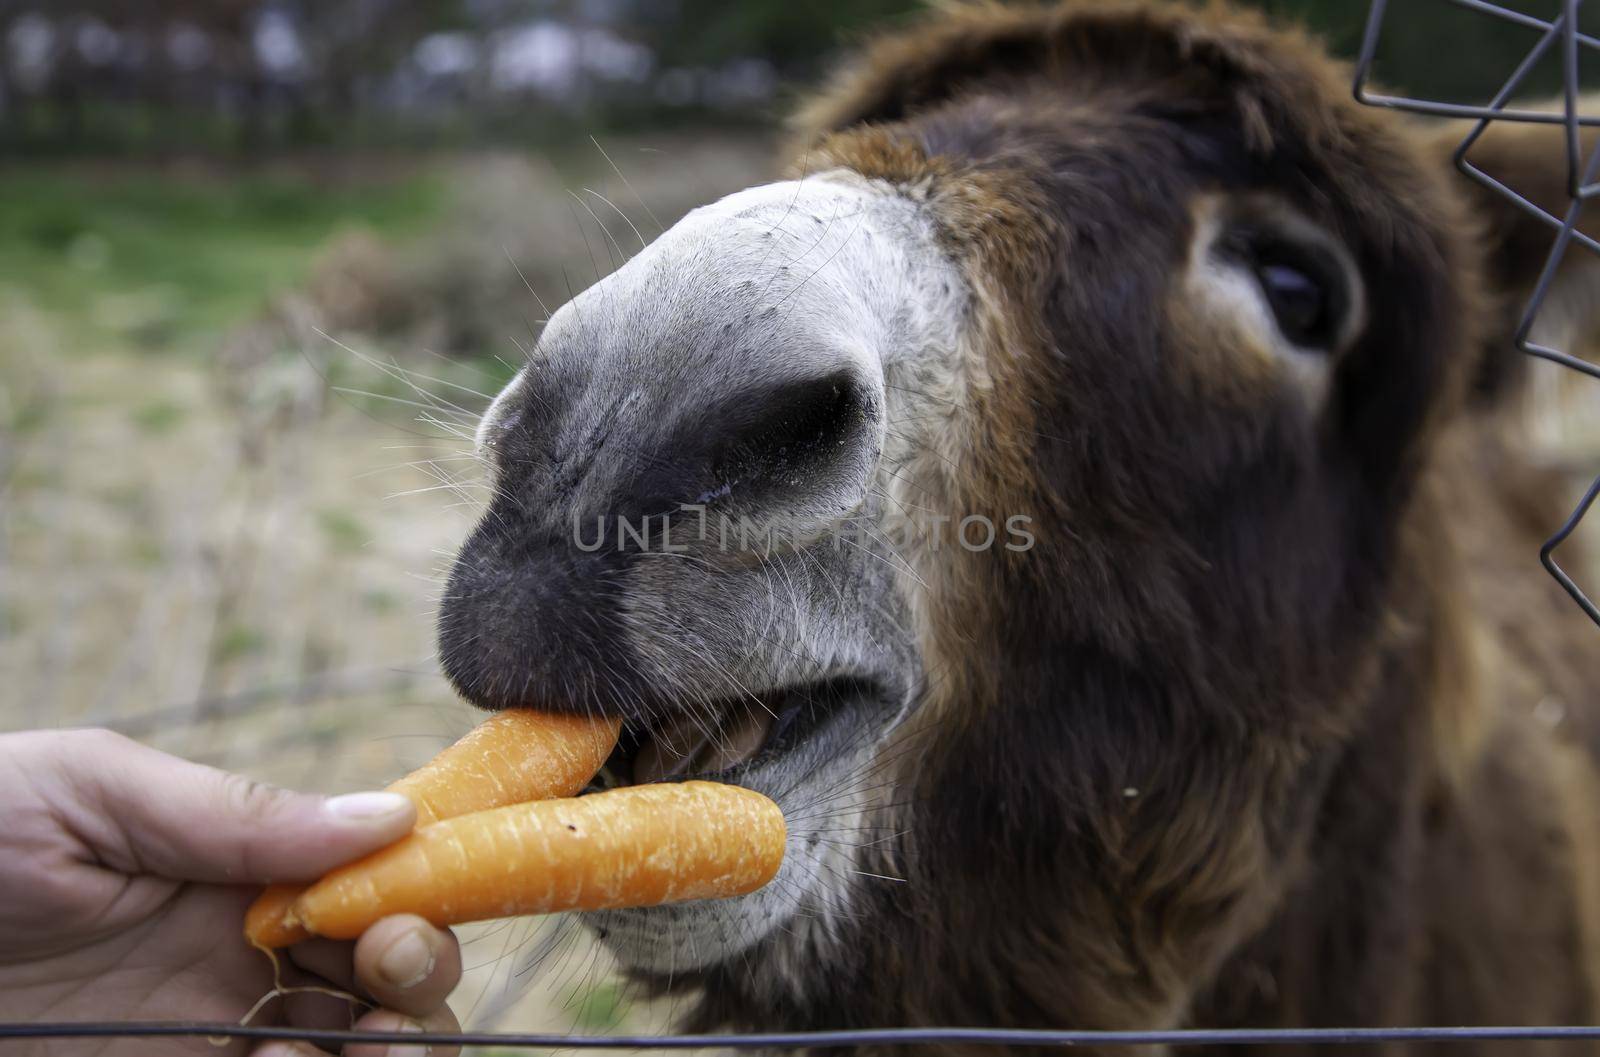 Detail of feeding a donkey on a rural farm by esebene